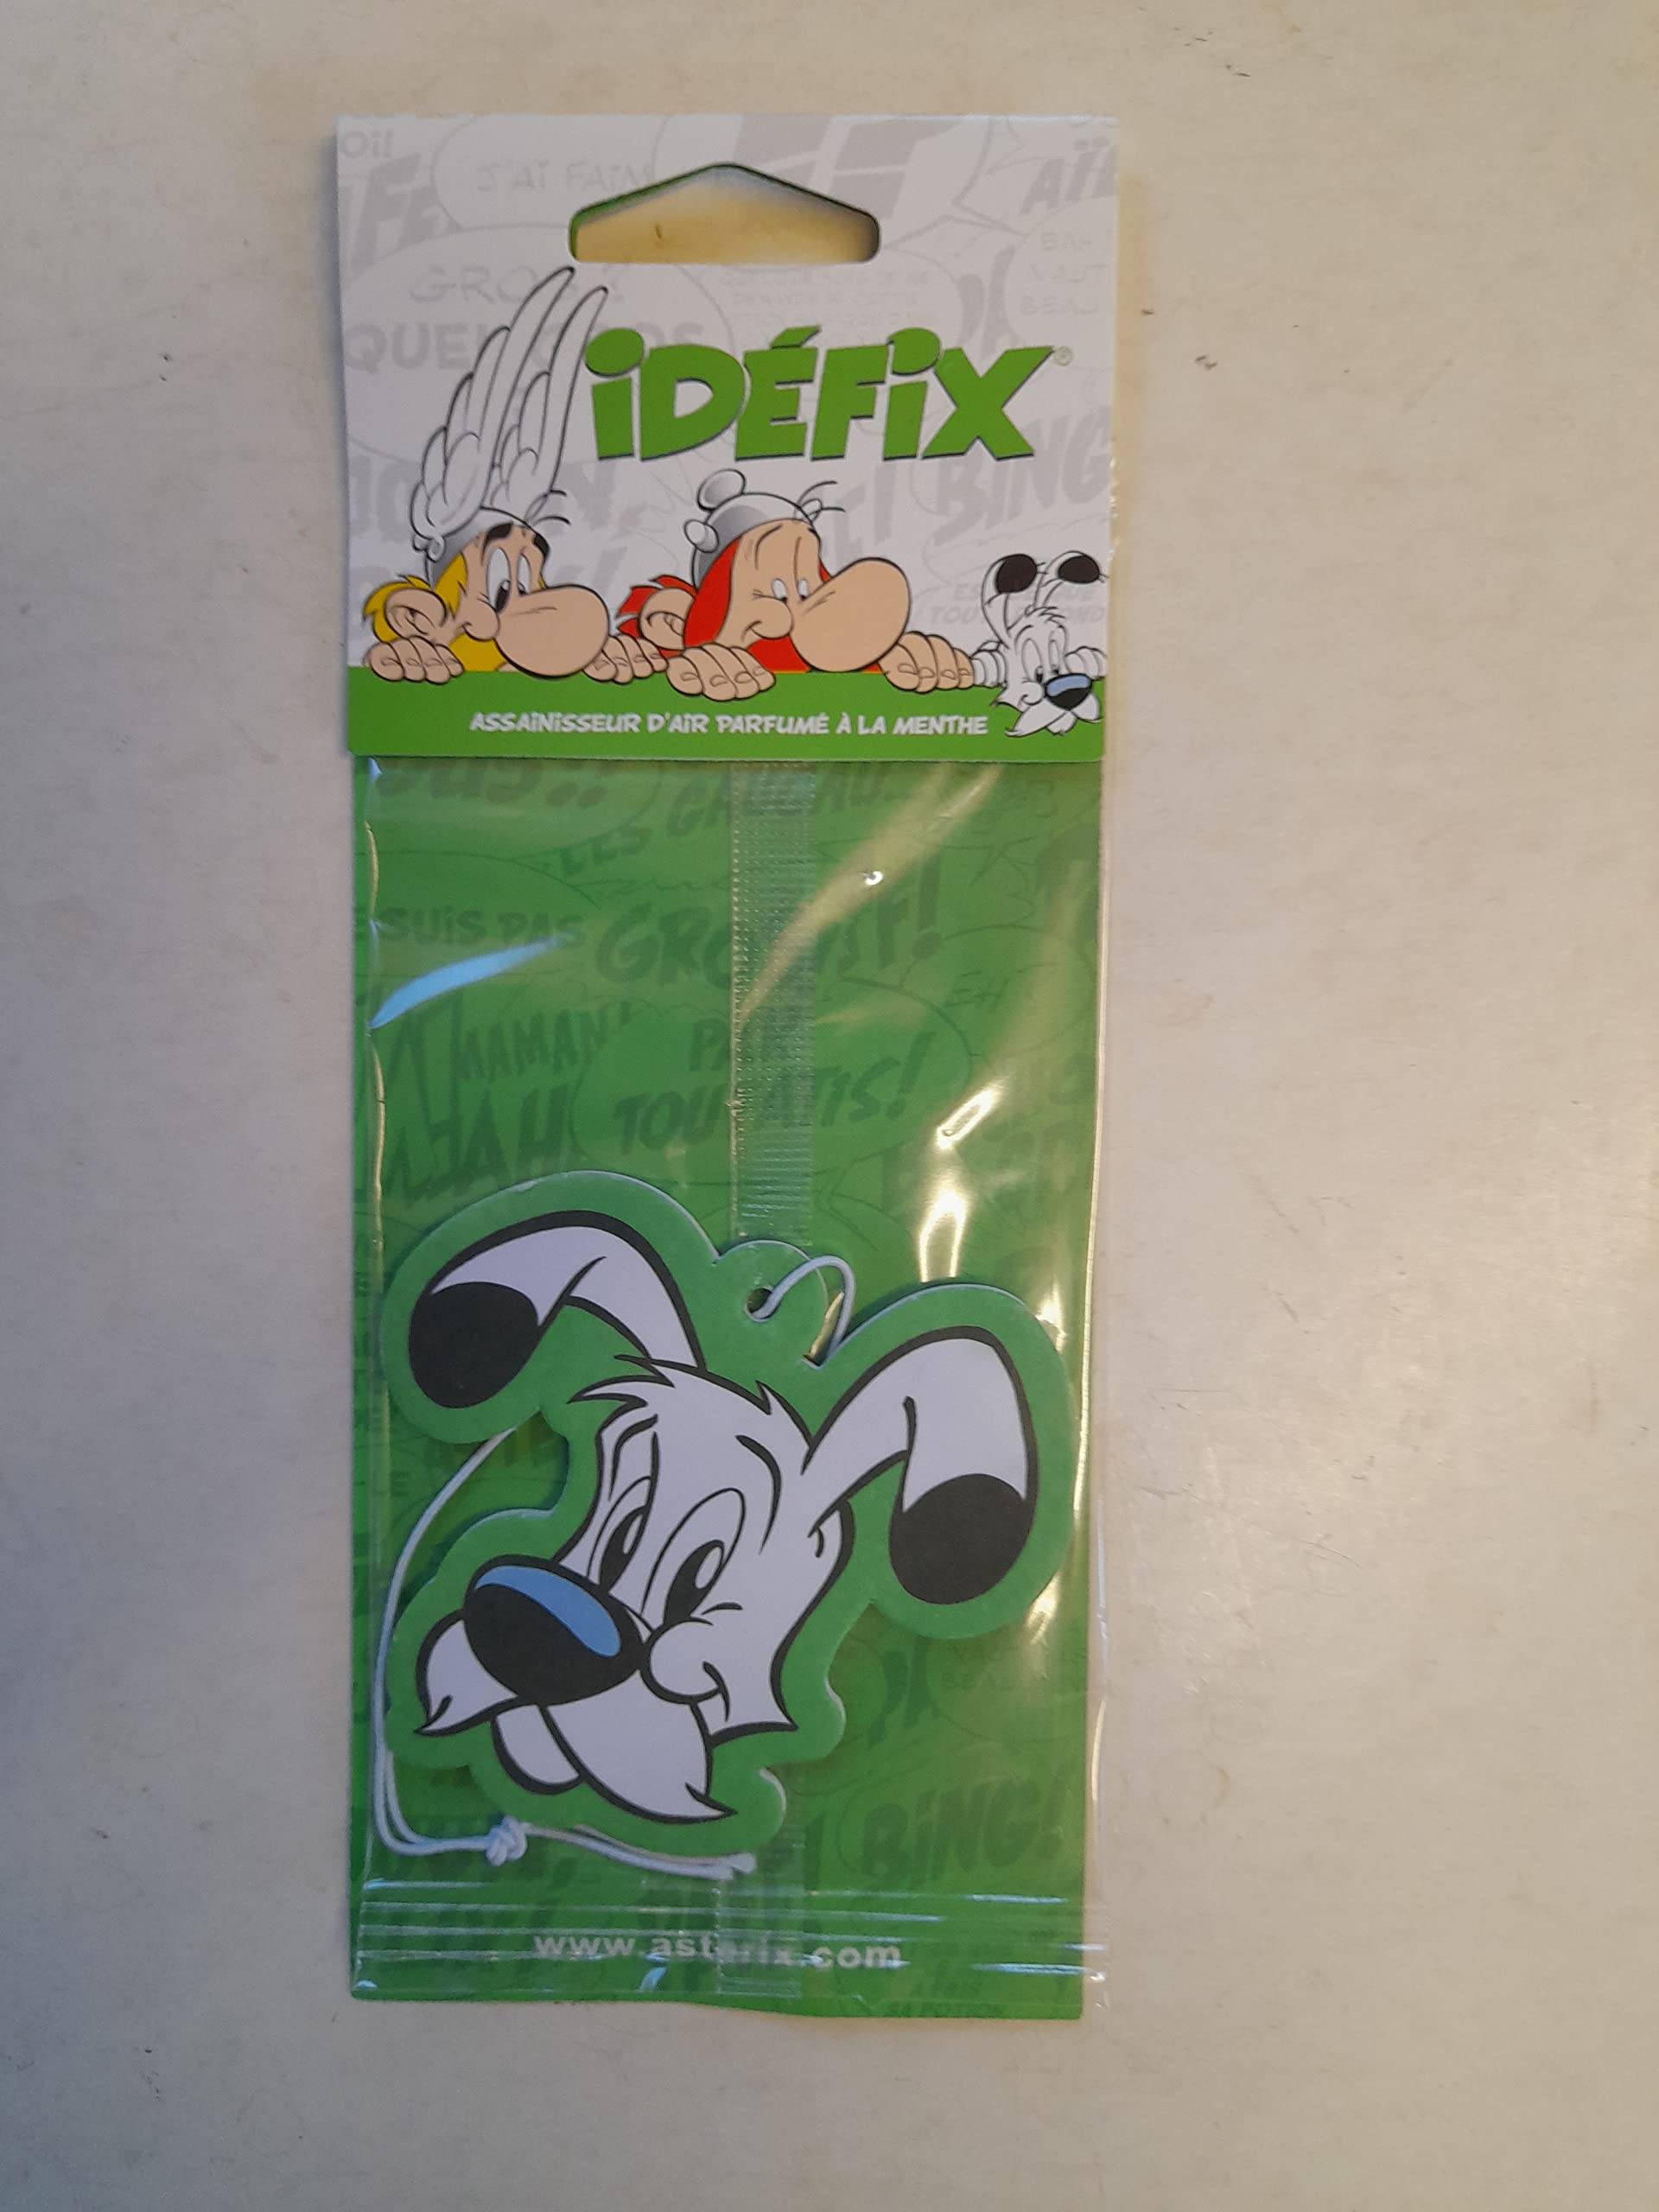 Asterix Auto-Lufterfrischer - Idefix (Dogmatix) von Puckator